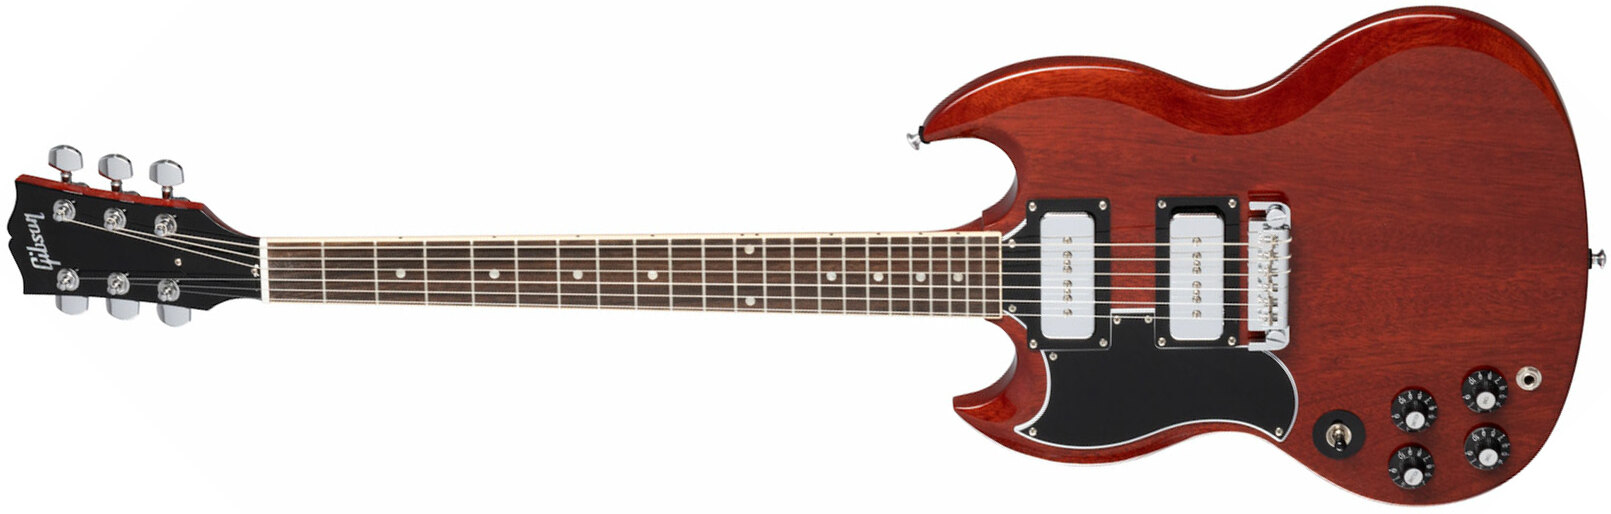 Gibson Sg Tony Iommi Special Lh Gaucher Signature 2p90 Ht Rw - Vintage Cherry - E-Gitarre für Linkshänder - Main picture